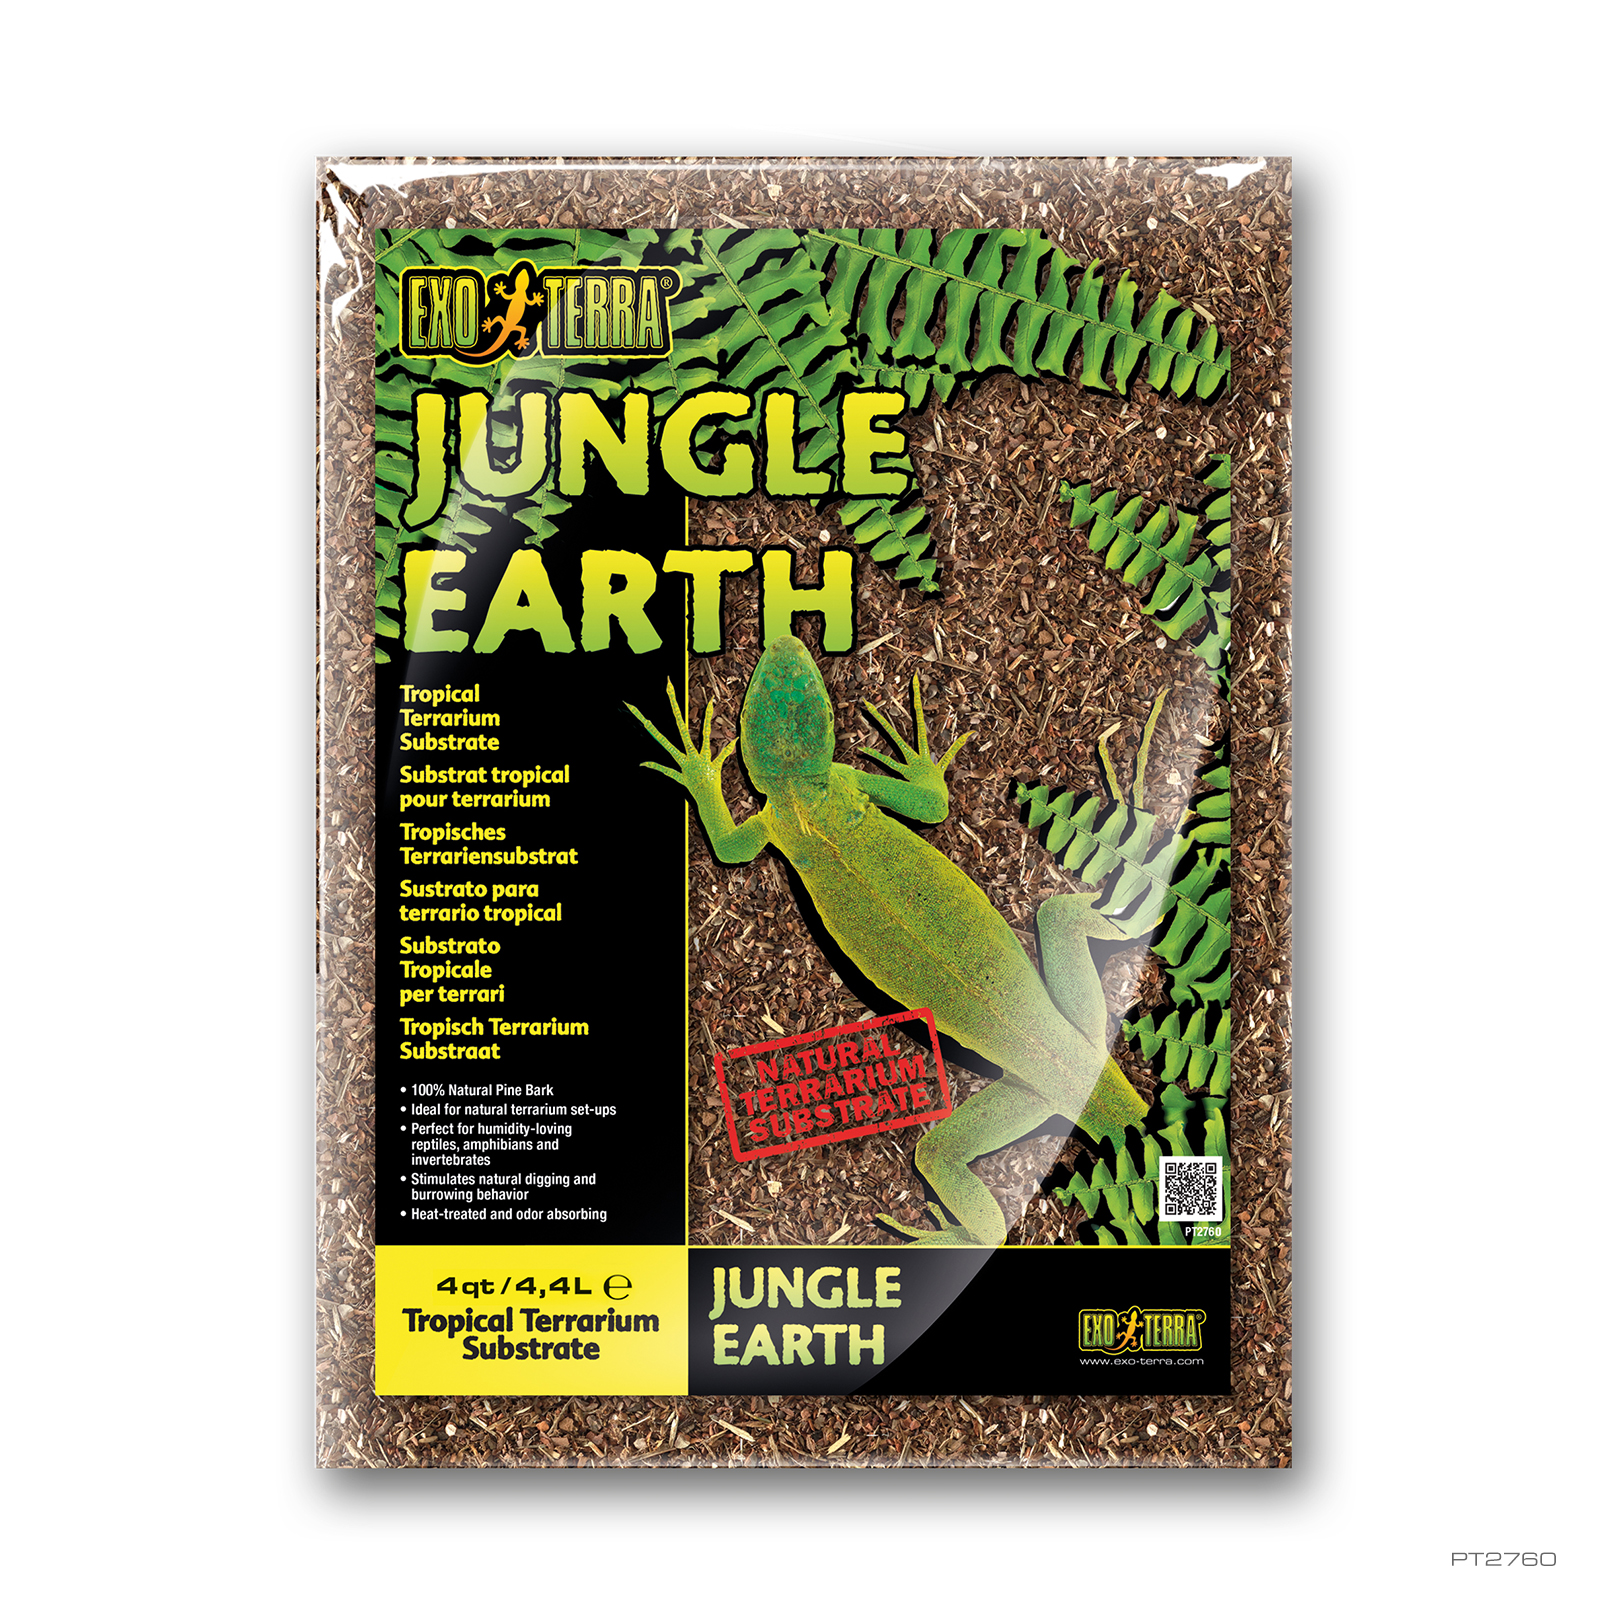 Jungle Earth 4QT - 4,4L